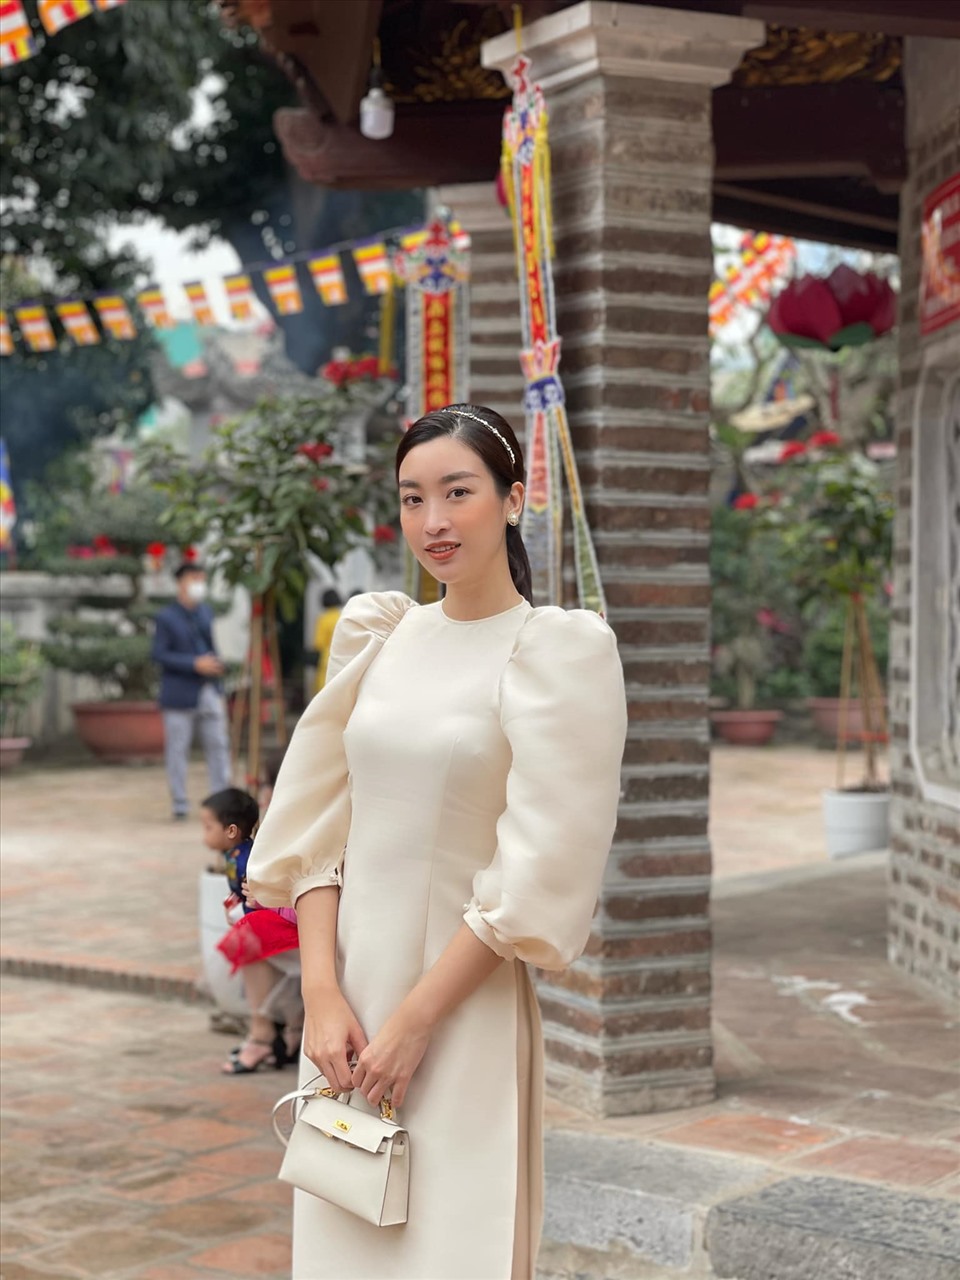 Là cô gái Hà Nội gốc, Hoa hậu Đỗ Mỹ Linh cũng không quên diện áo dài đi lễ chùa đầu năm. “Năm nay không mong gì chỉ mong mọi người ai cũng bình an, hạnh phúc“, Hoa hậu sinh năm 1996 chia sẻ. Ảnh: NVCC.